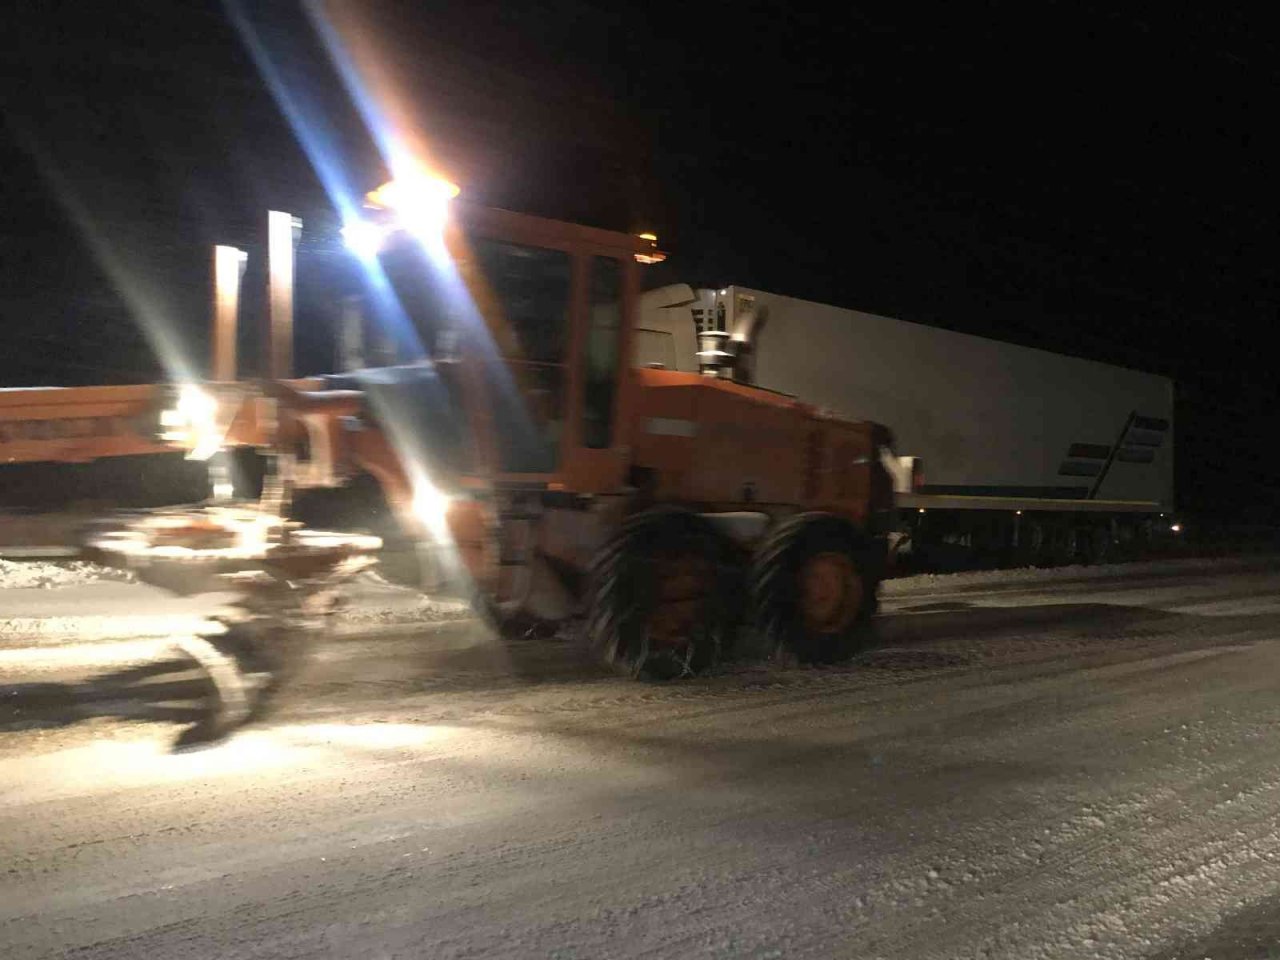 Antalya-Konya karayolunda kar kalınlığı 20 santime ulaştı, araçlar yolda kaldı